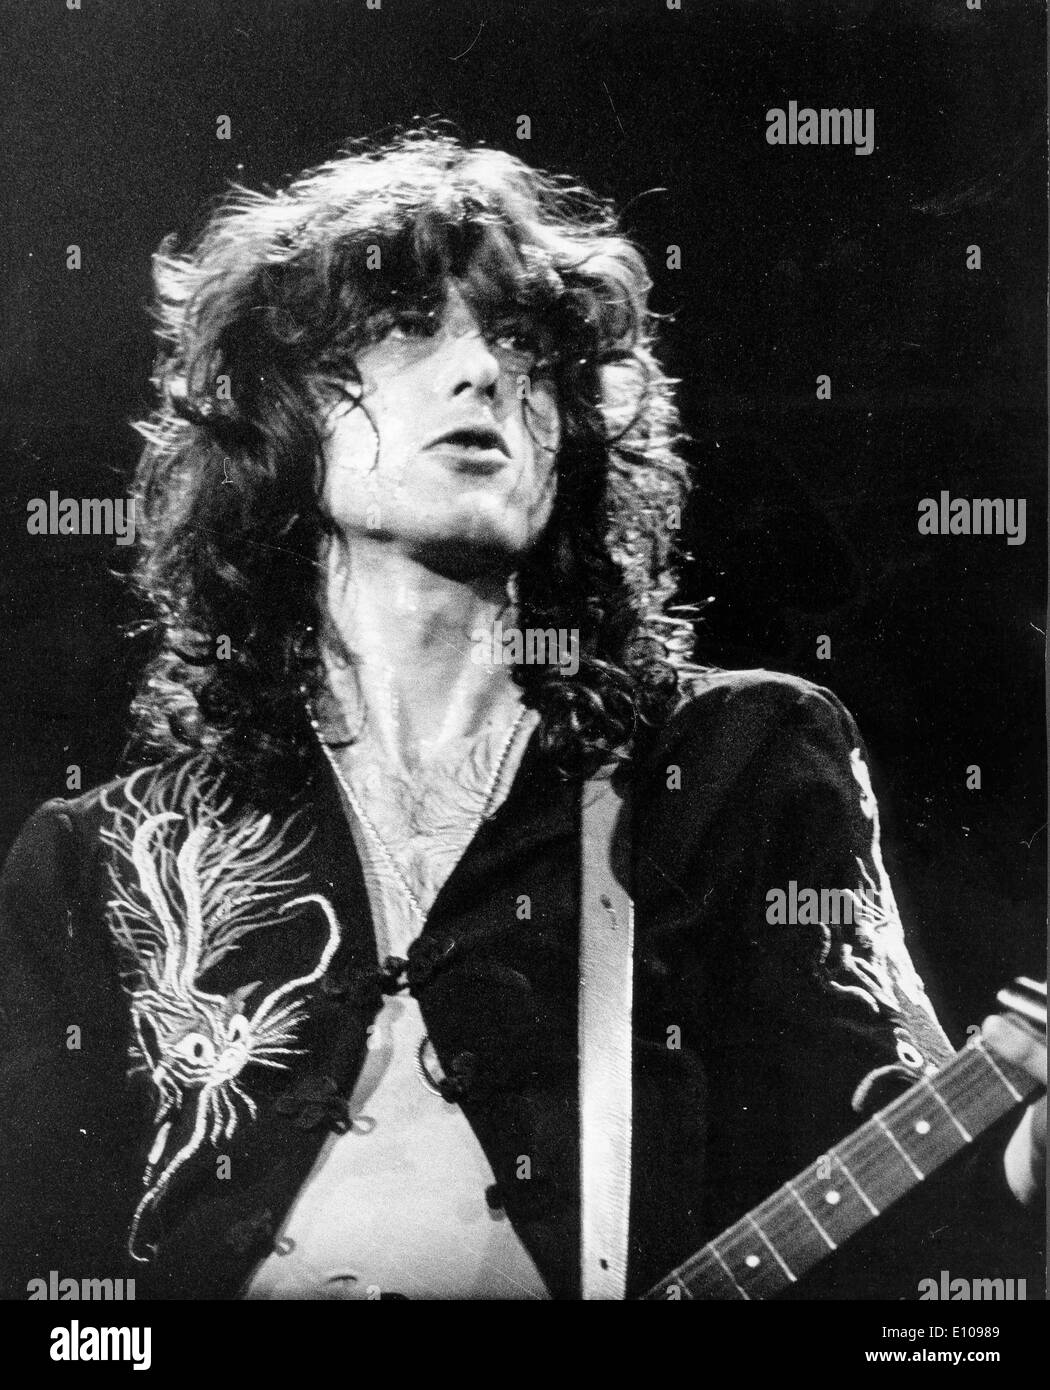 Led Zeppelin el guitarrista Jimmy Page en concierto Fotografía de stock -  Alamy